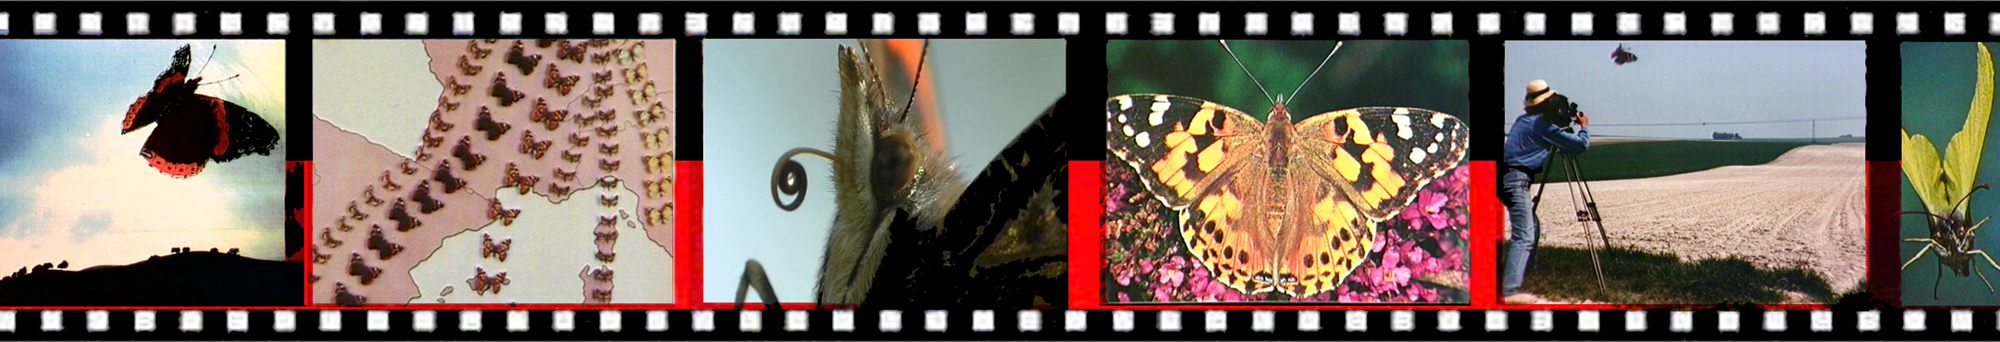 2012-film-vlinders.jpg